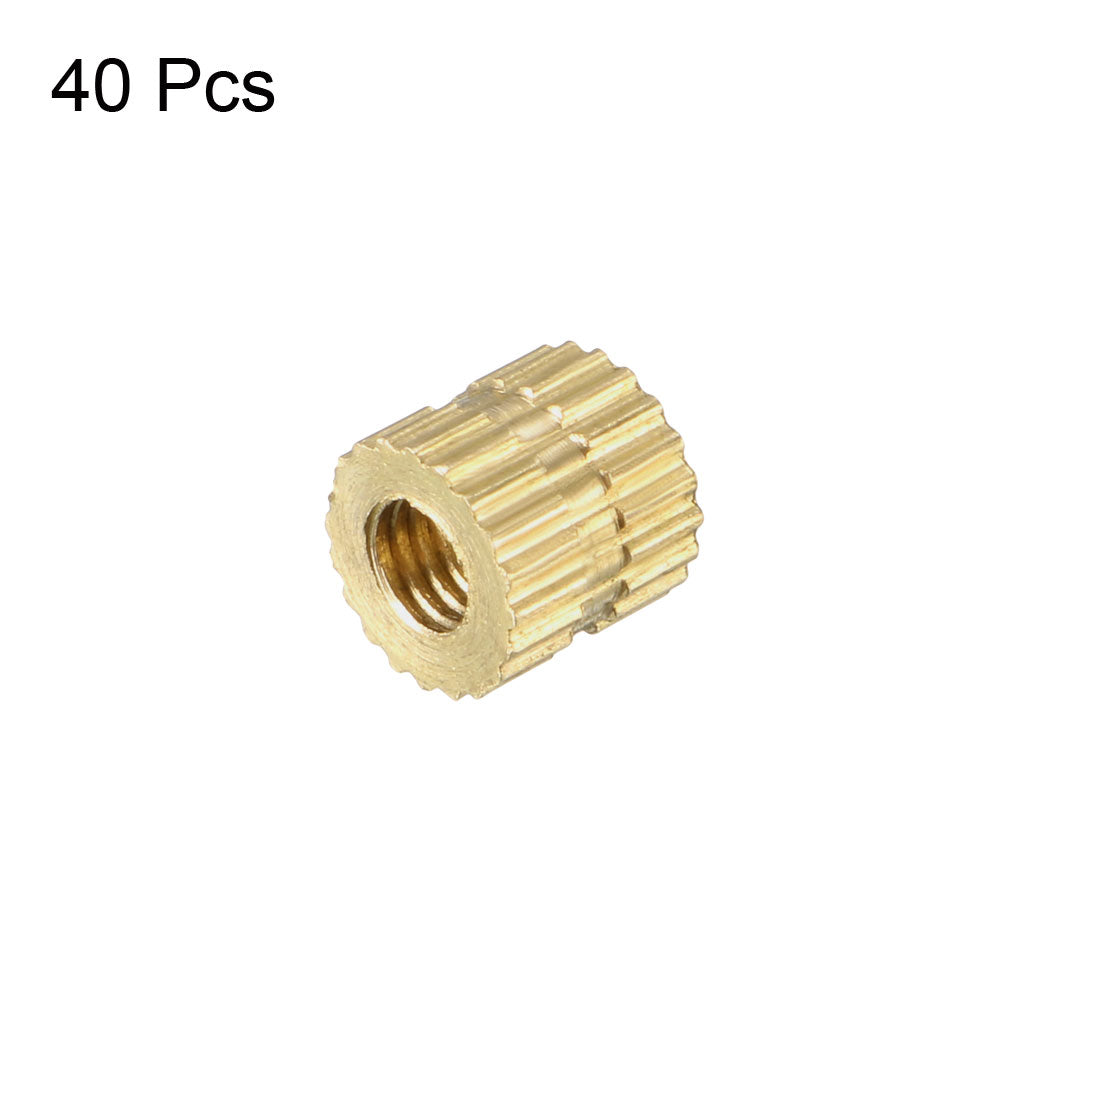 uxcell Uxcell M3 x 5mm(L) x 5.4mm(OD) Female Thread Brass Knurled Threaded Insert Embedment Nuts, 40 Pcs